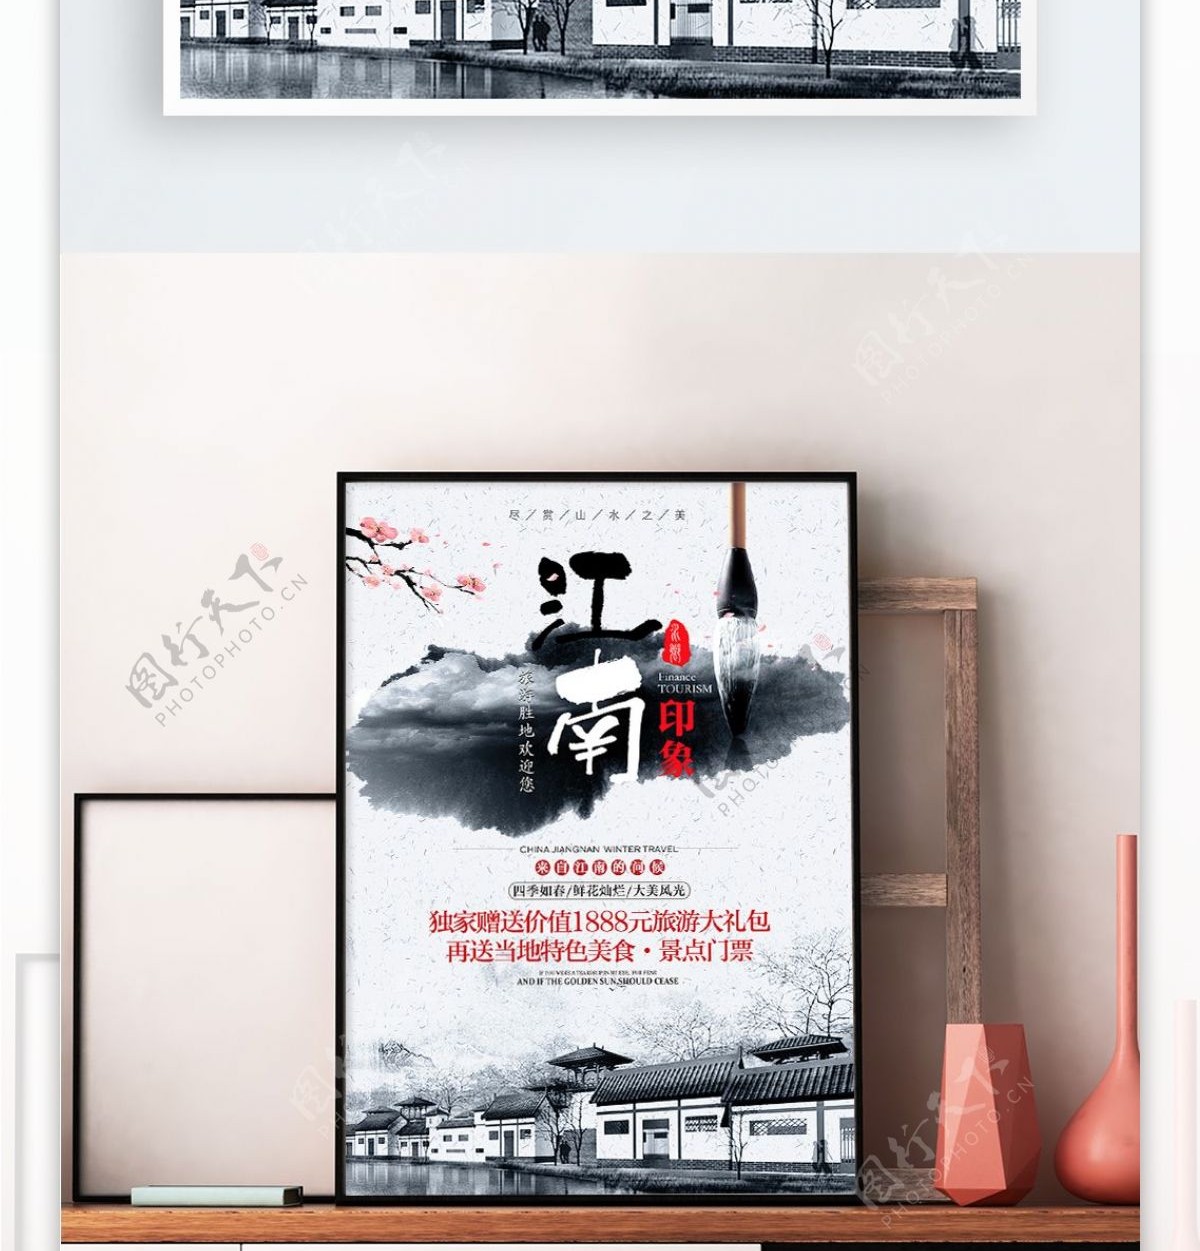 江南印象旅游旅行宣传海报展板